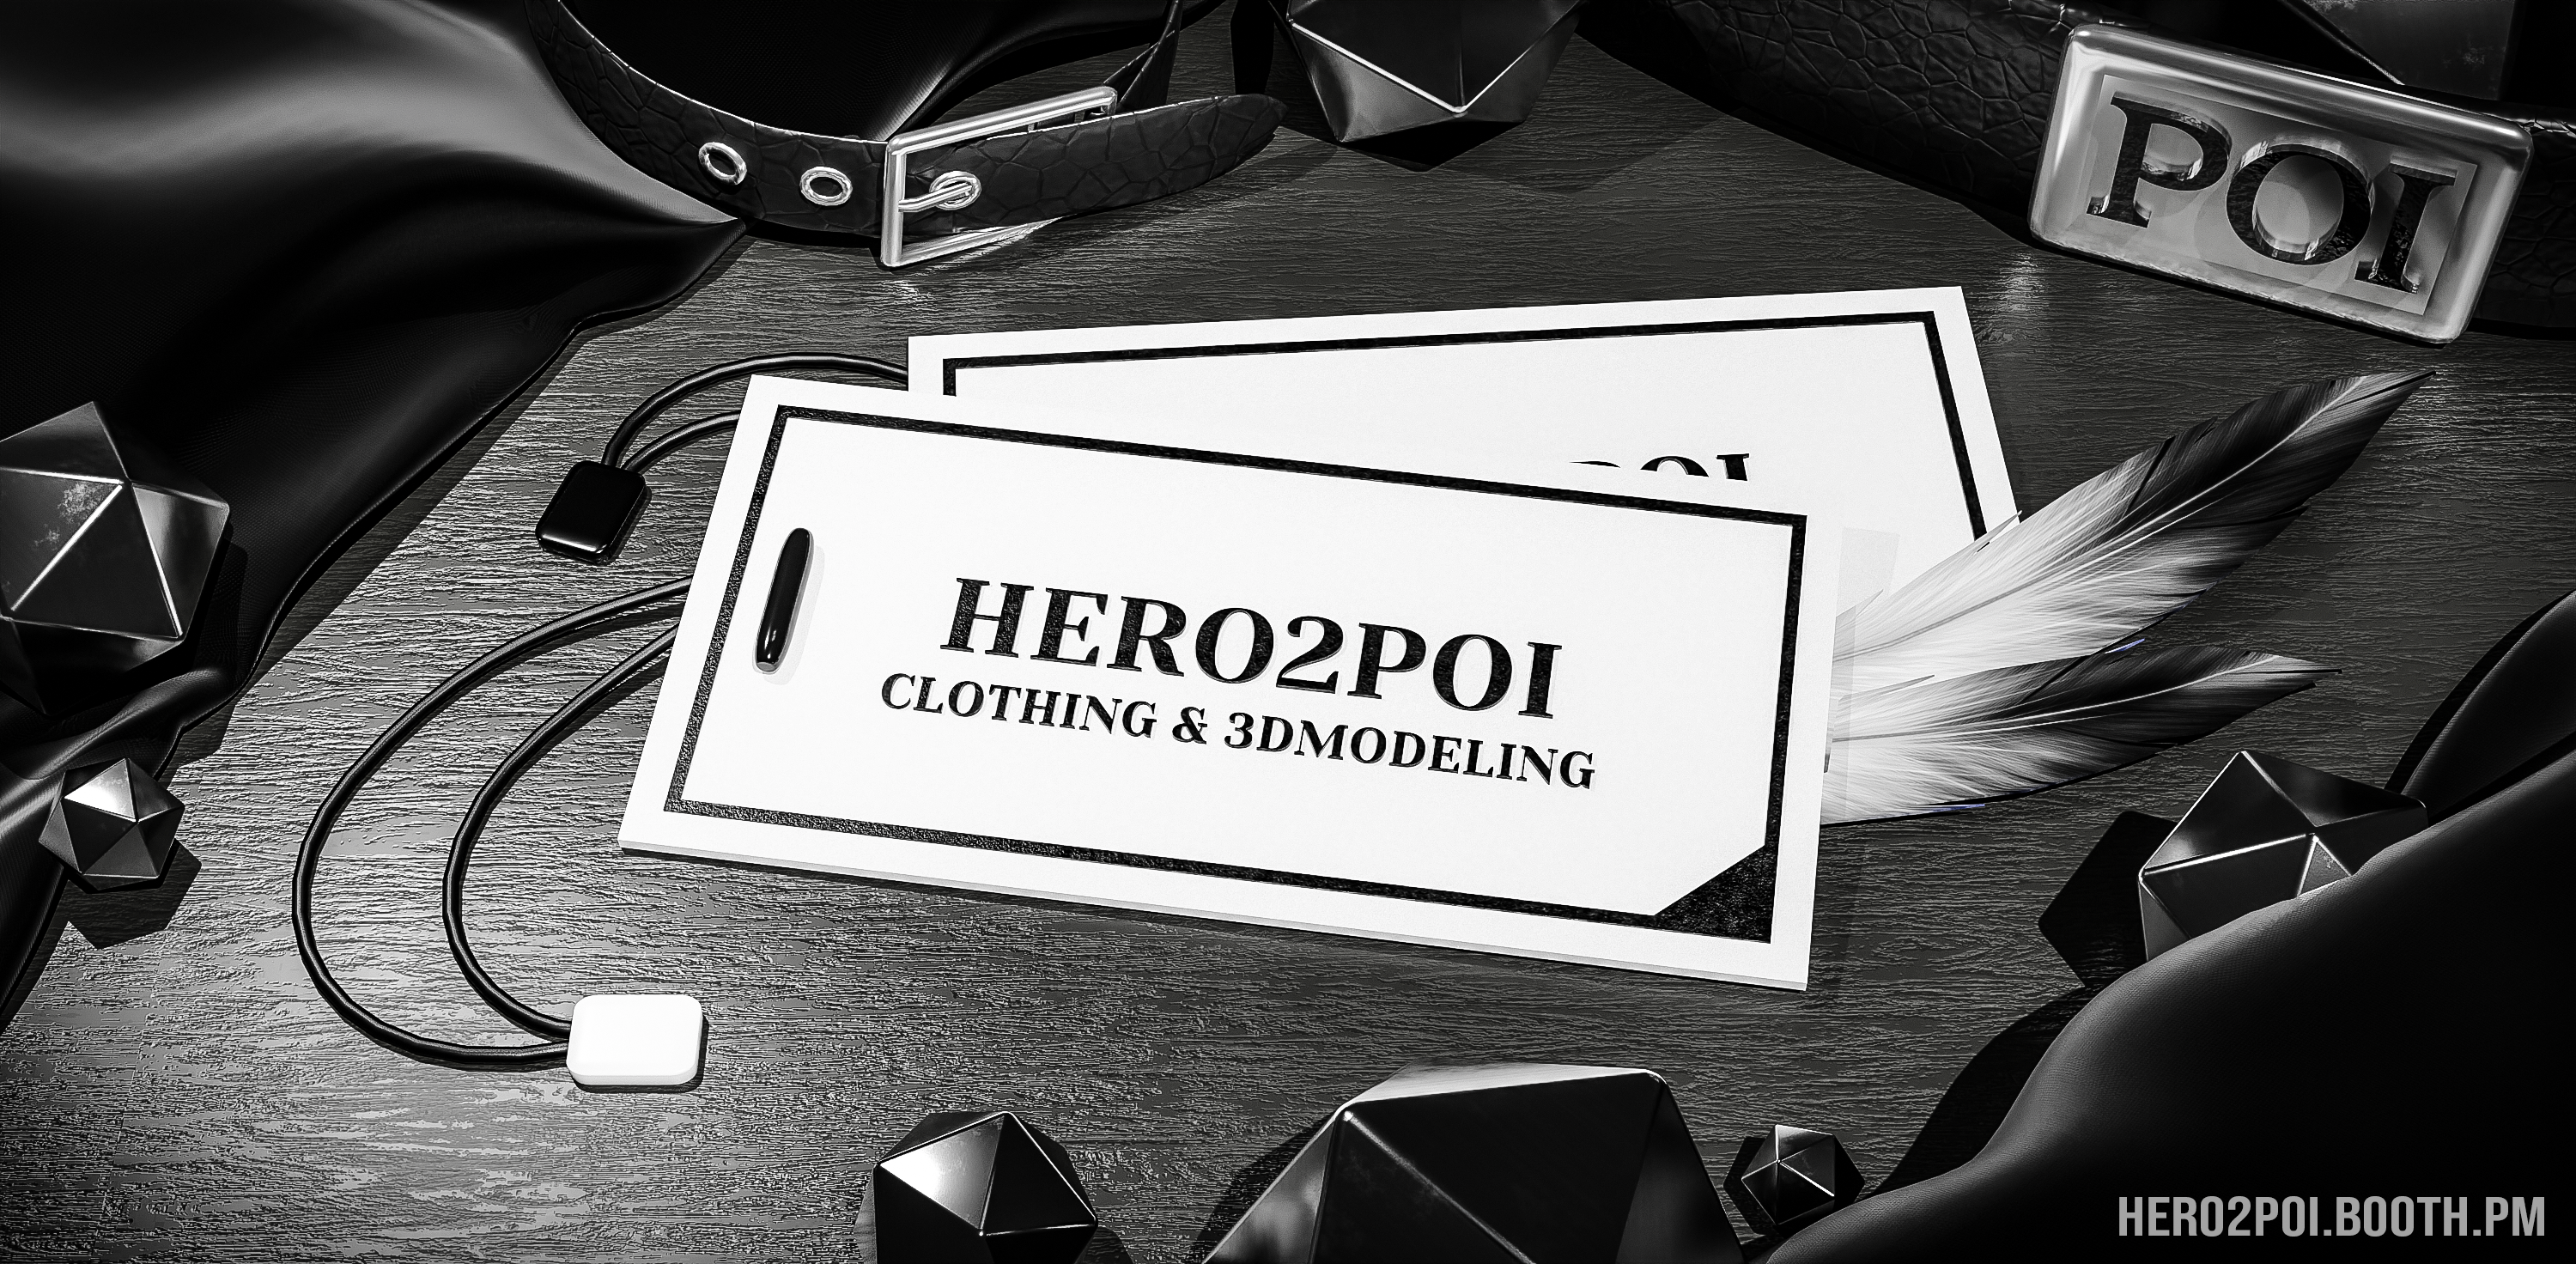 HERO2POI